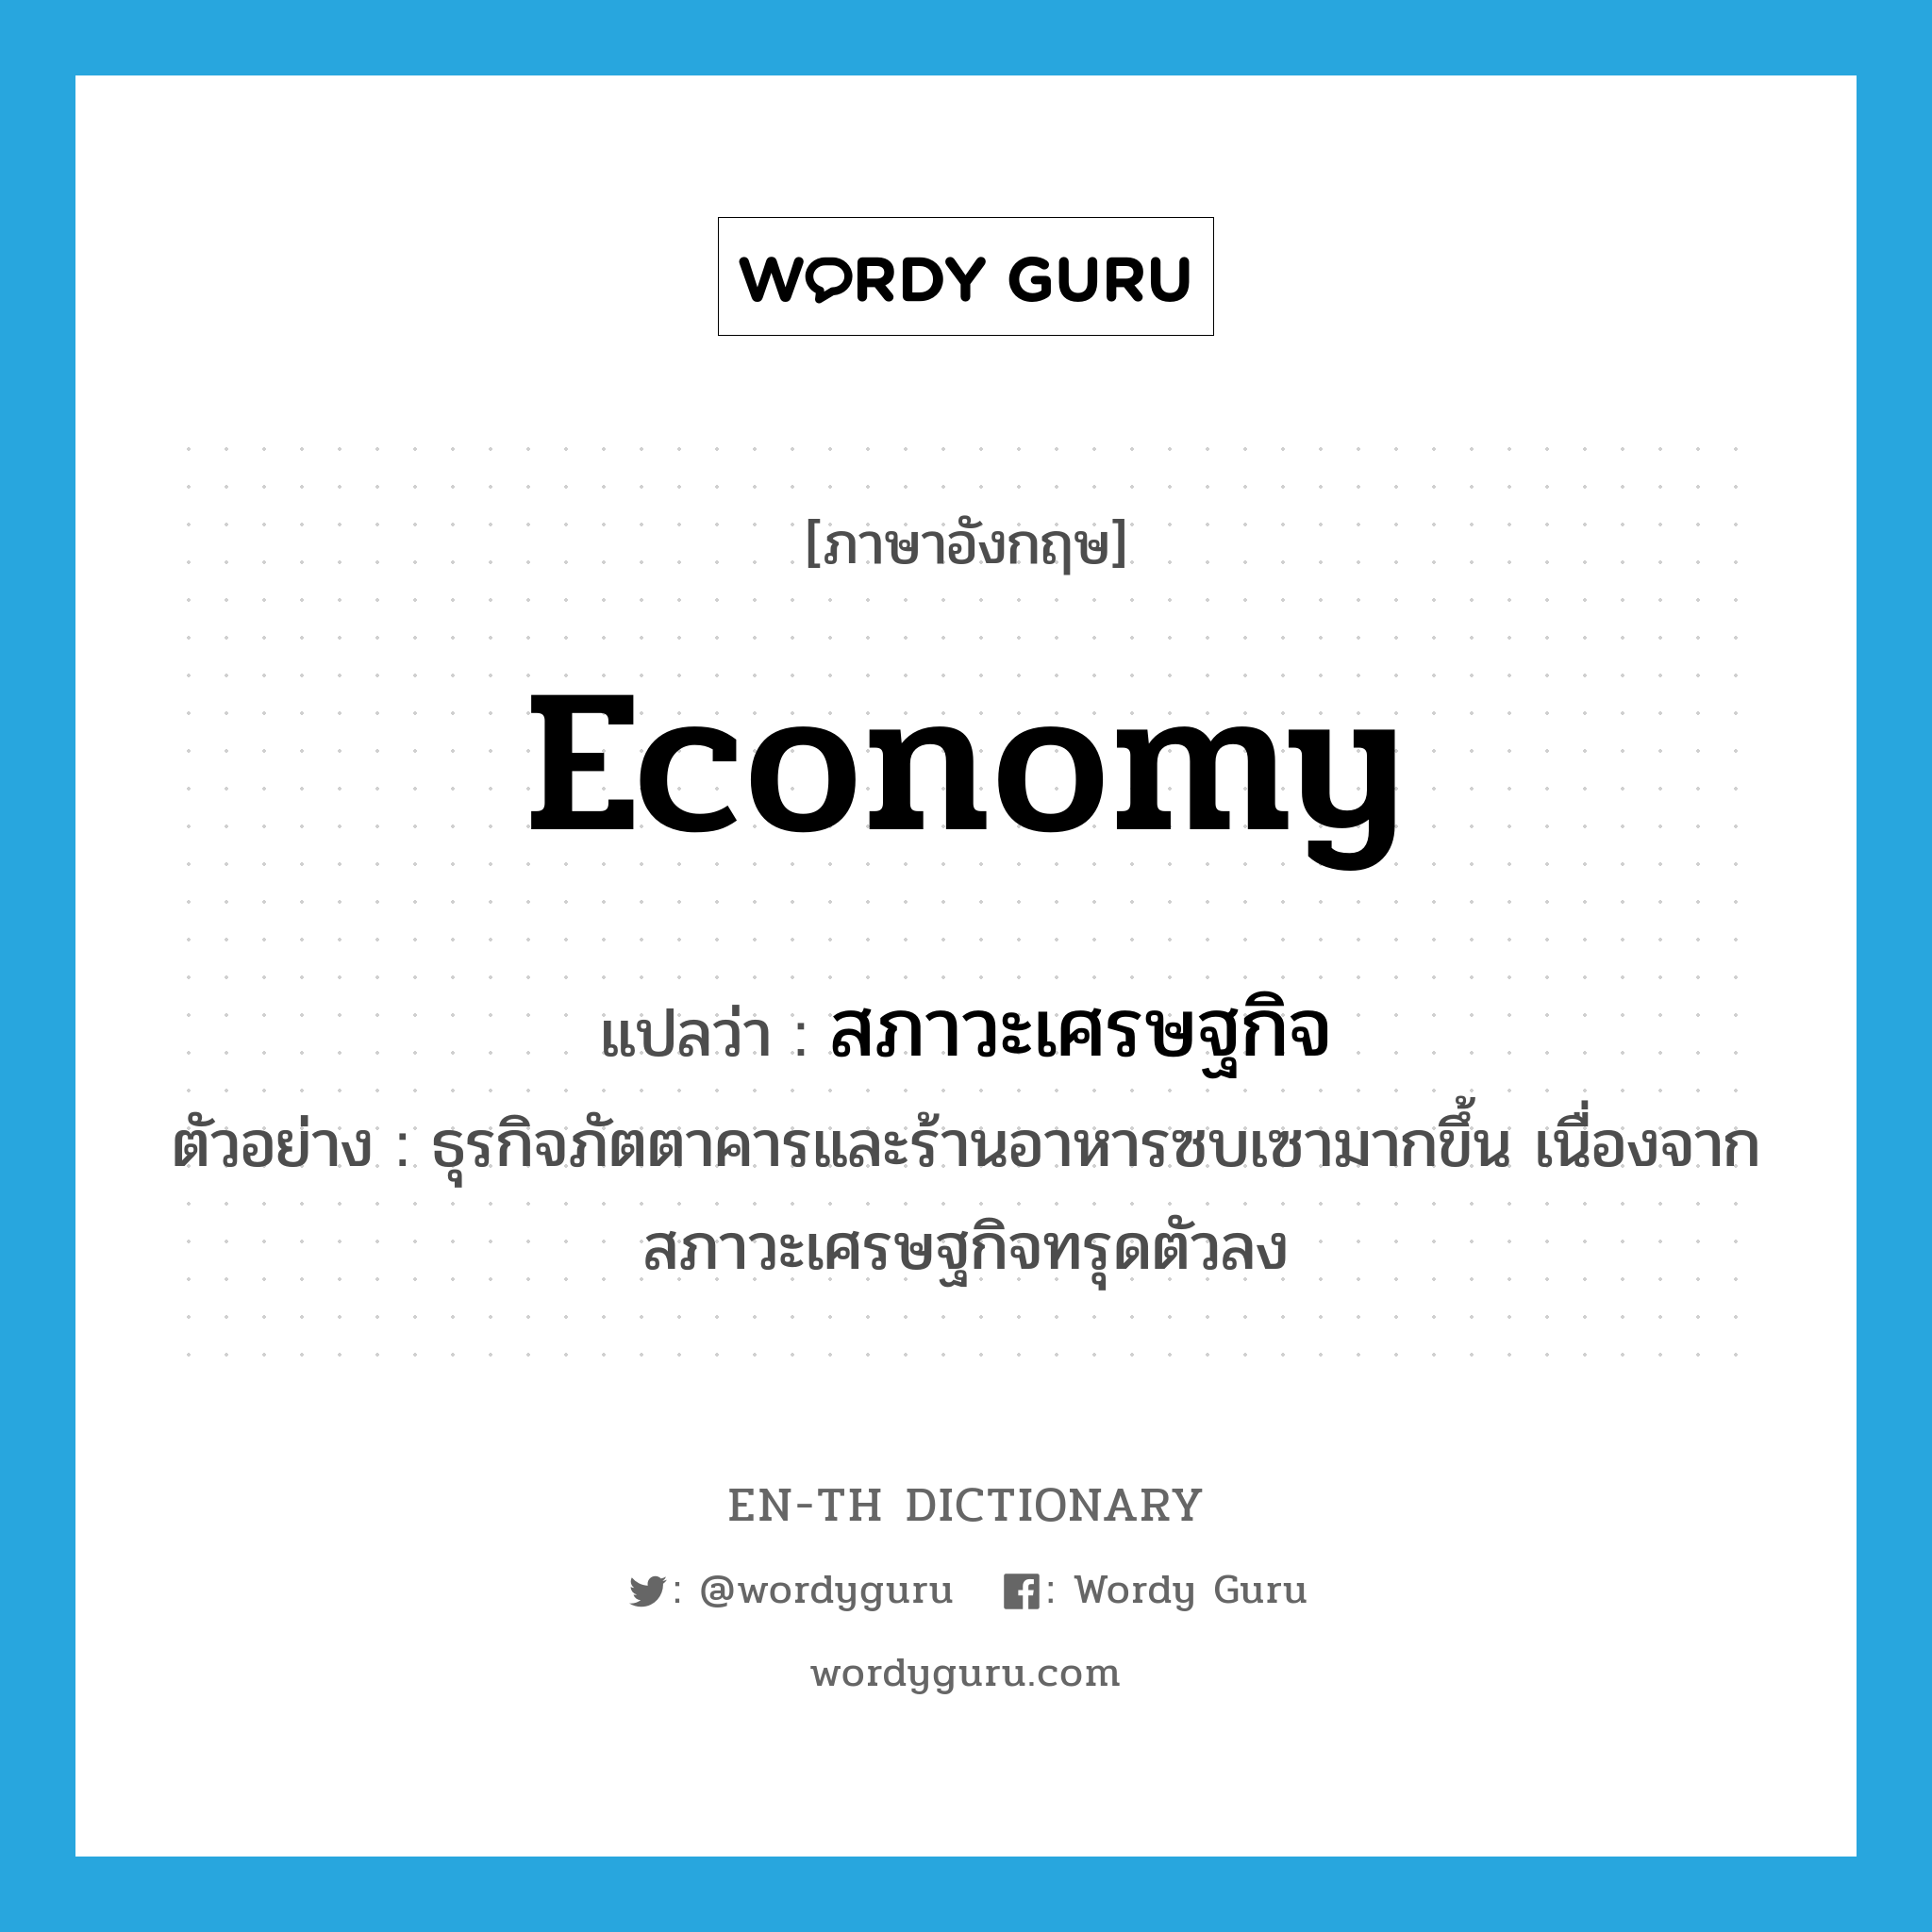 สภาวะเศรษฐกิจ ภาษาอังกฤษ?, คำศัพท์ภาษาอังกฤษ สภาวะเศรษฐกิจ แปลว่า economy ประเภท N ตัวอย่าง ธุรกิจภัตตาคารและร้านอาหารซบเซามากขึ้น เนื่องจากสภาวะเศรษฐกิจทรุดตัวลง หมวด N